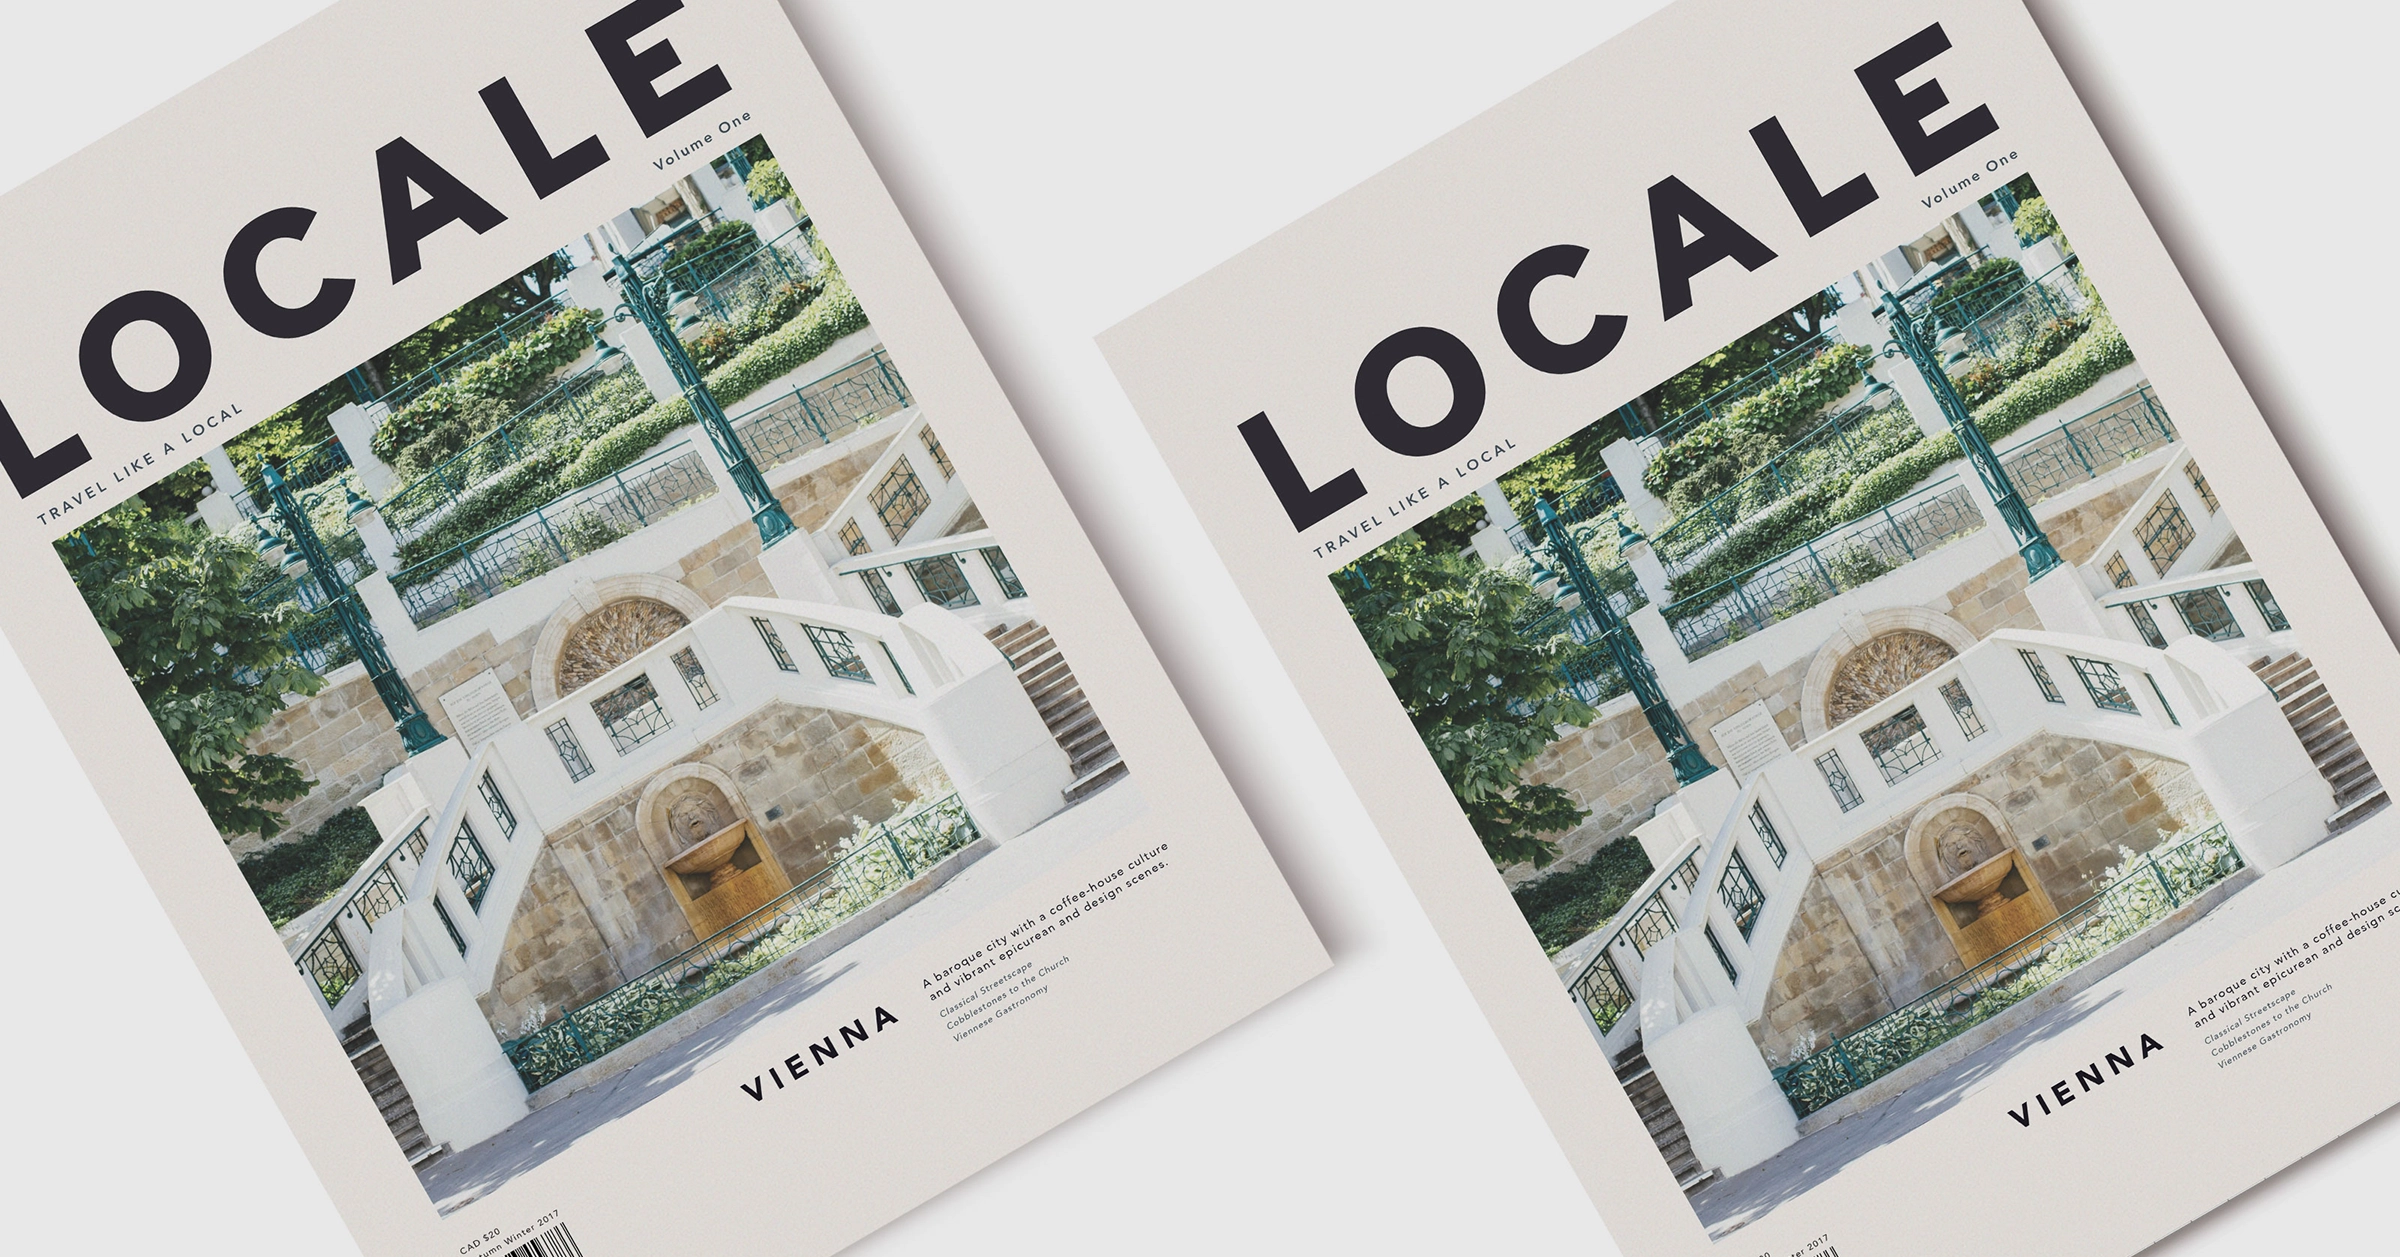 Locale Magazine Covers